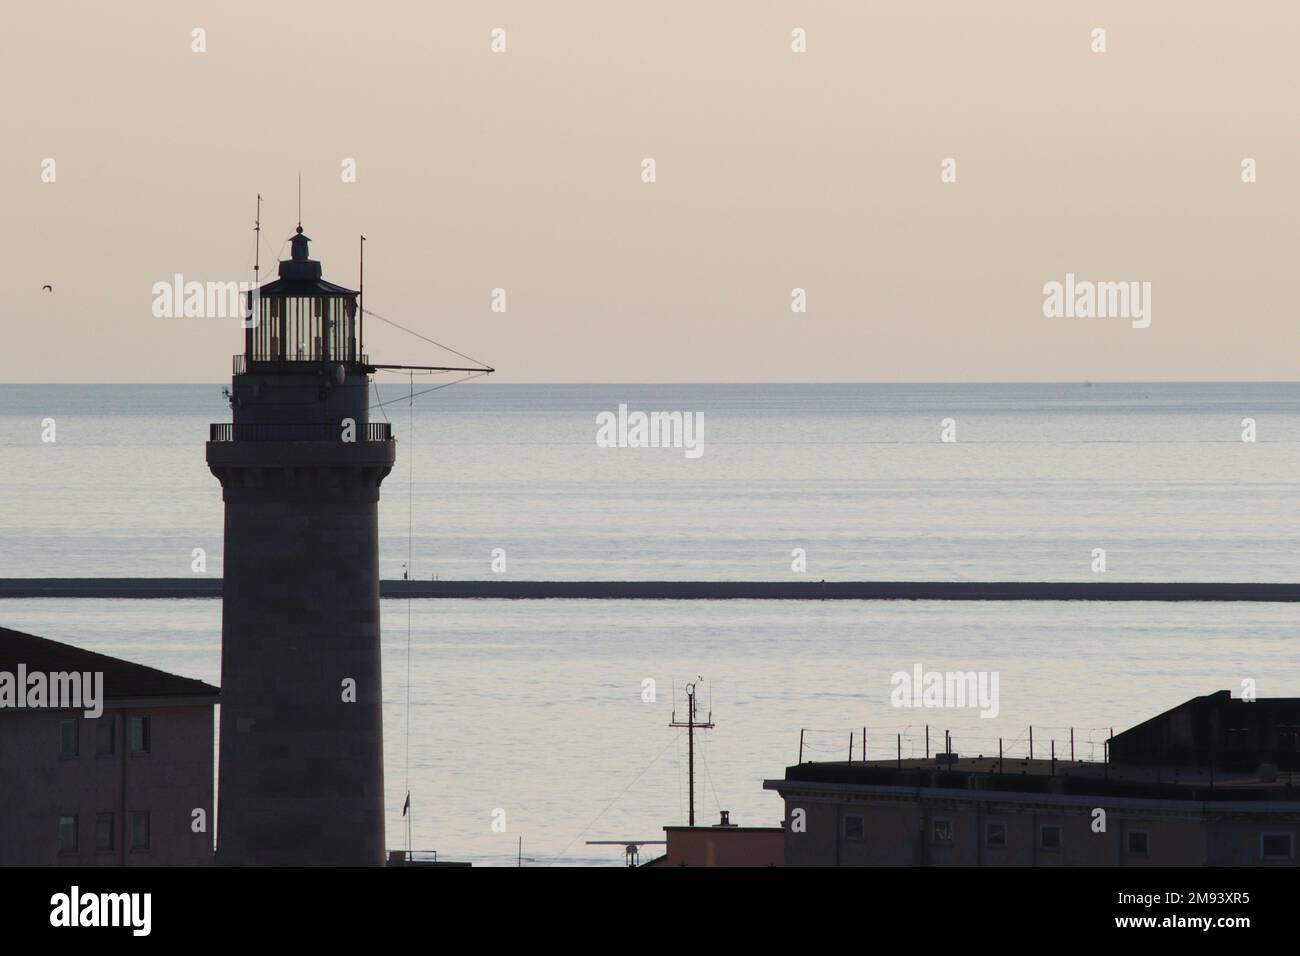 L'esordio della luce notturna sul porto di Trieste e sul faro della Lanterna di Trieste, trasformando elementi visibili in silhouette. Foto Stock